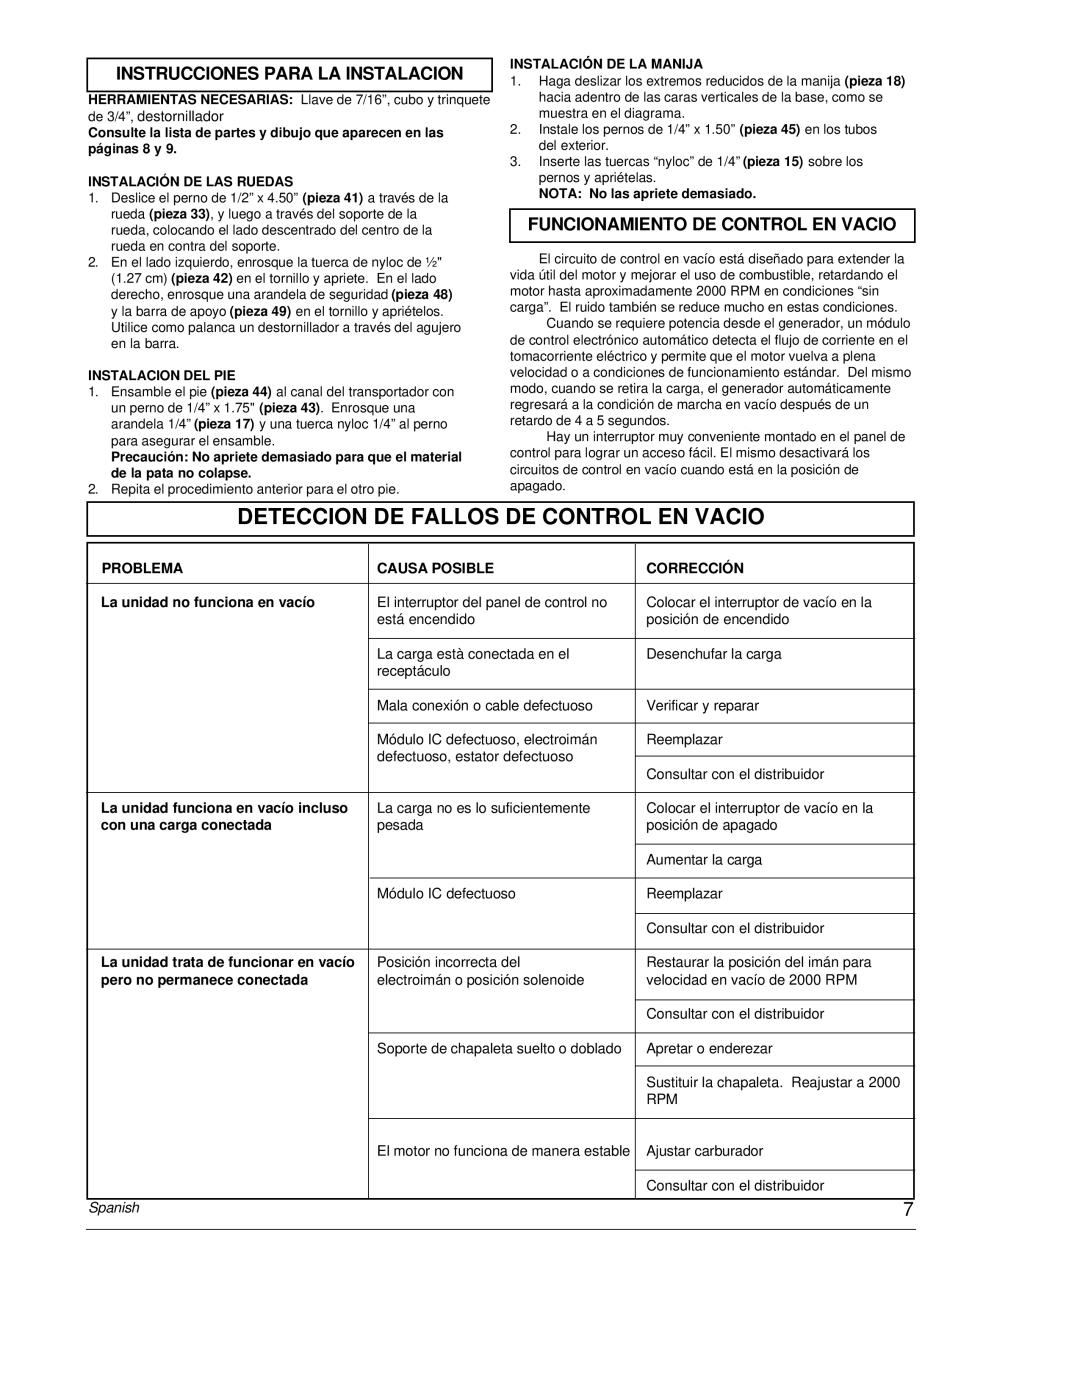 Powermate PC0464500 manual Deteccion De Fallos De Control En Vacio, Instrucciones Para La Instalacion, Spanish 